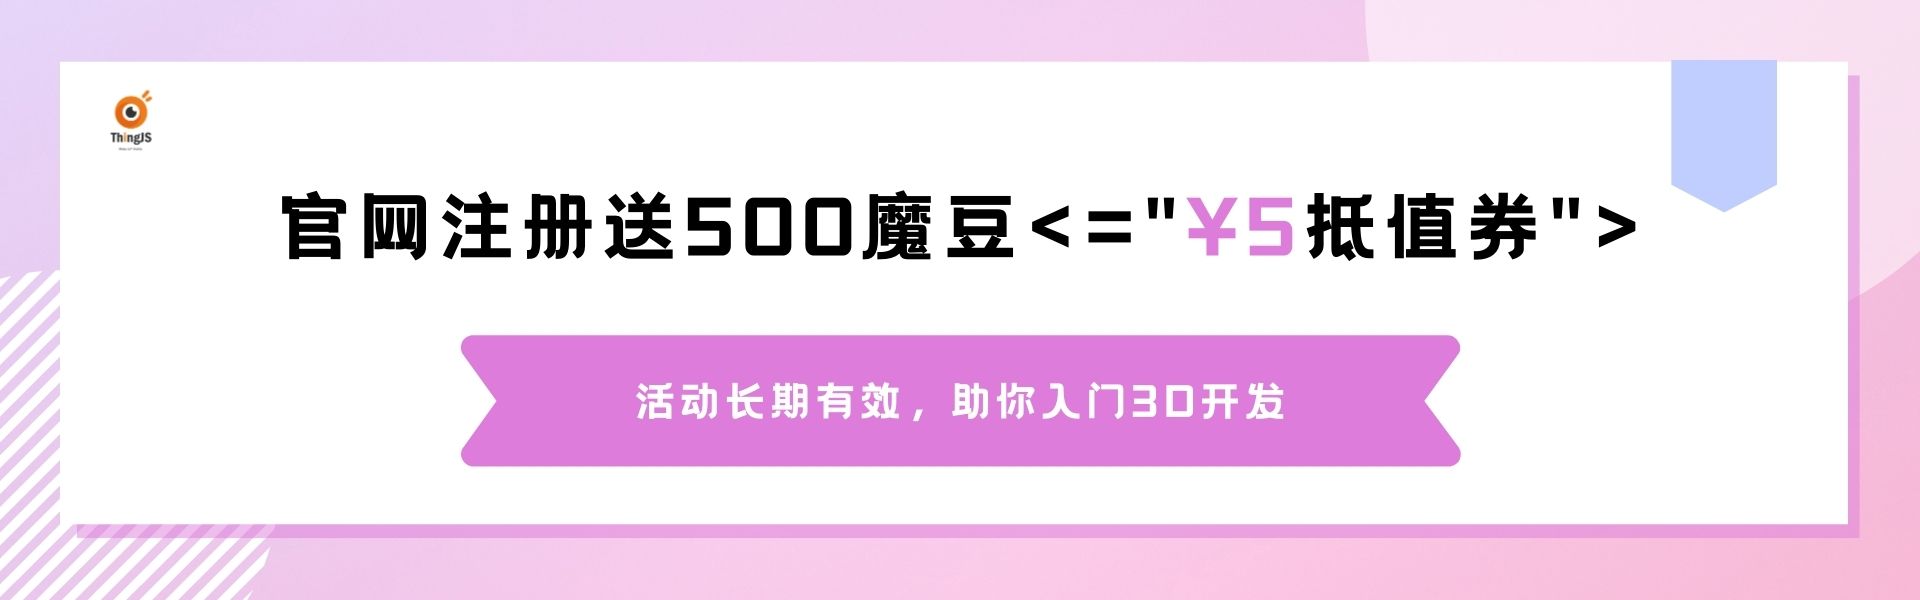 官网注册送500魔豆，相当于¥5抵值券.jpg